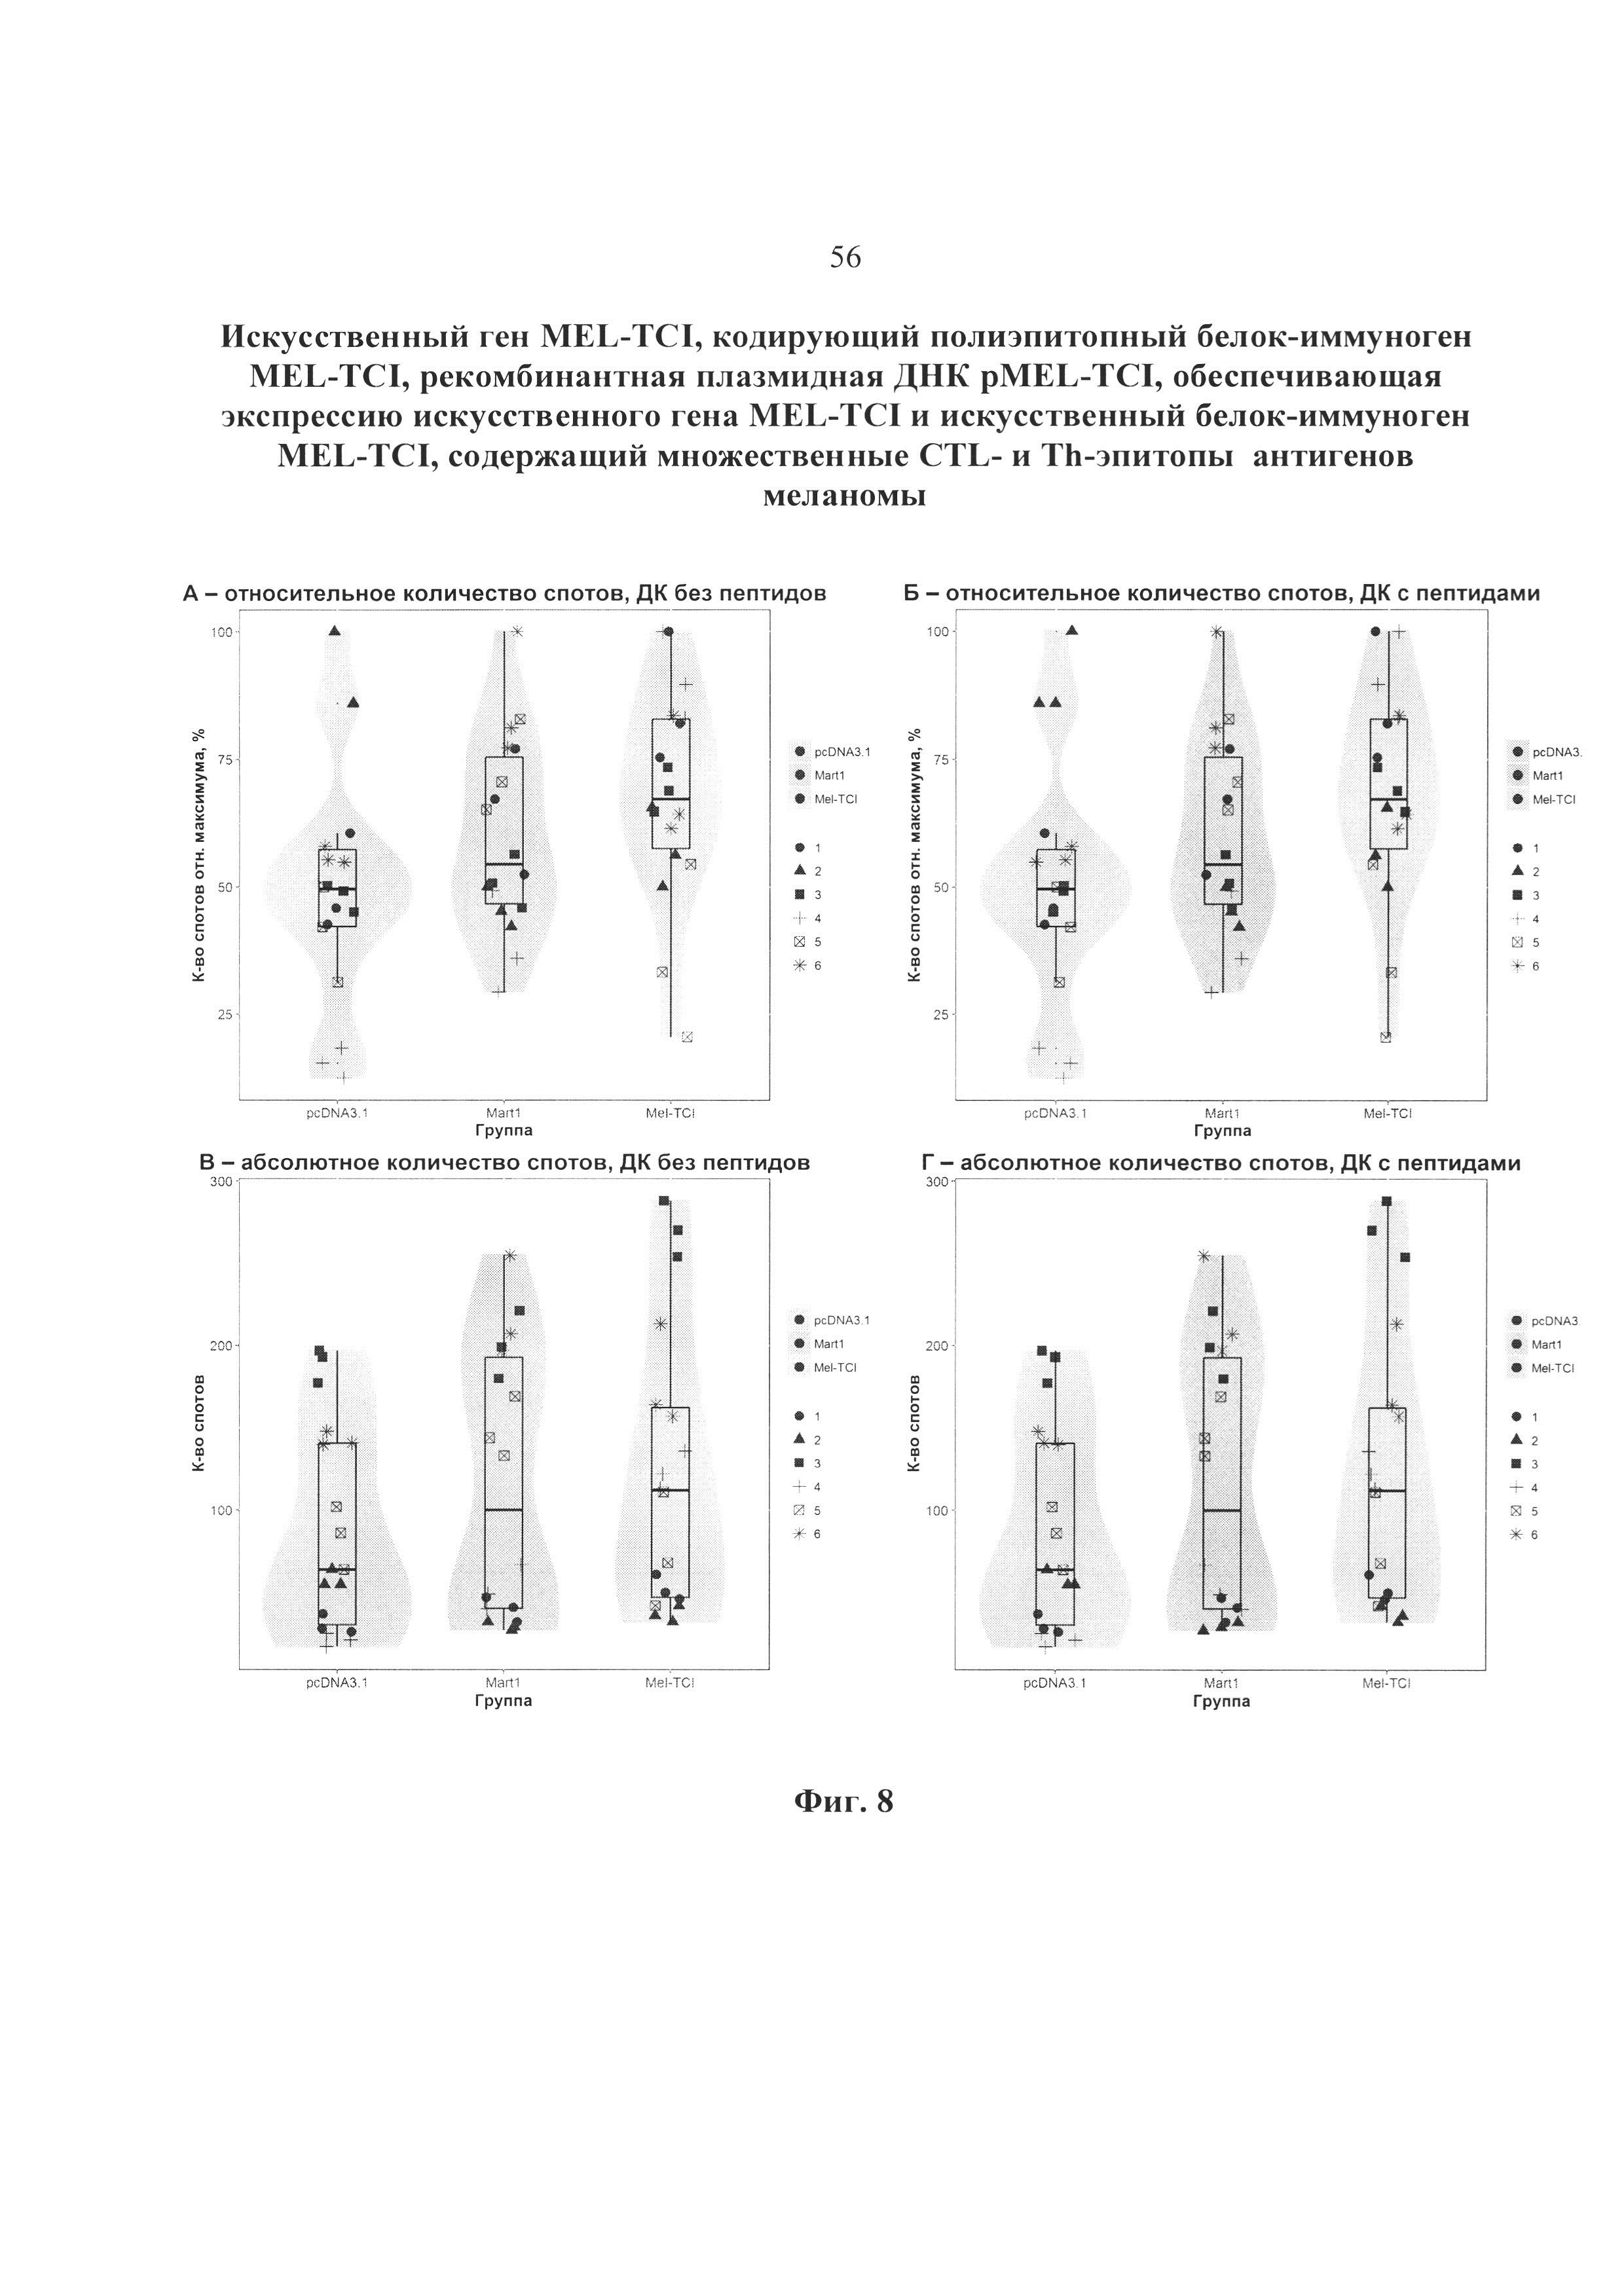 Искусственный ген MEL-TCI, кодирующий полиэпитопный белок-иммуноген MEL-TCI, рекомбинантная плазмидная ДНК pMEL-TCI, обеспечивающая экспрессию искусственного гена MEL-TCI и искусственный белок-иммуноген MEL-TCI, содержащий CTL- и Th-эпитопы антигенов меланомы, рестриктированные множественными аллелями HLA I и II класса